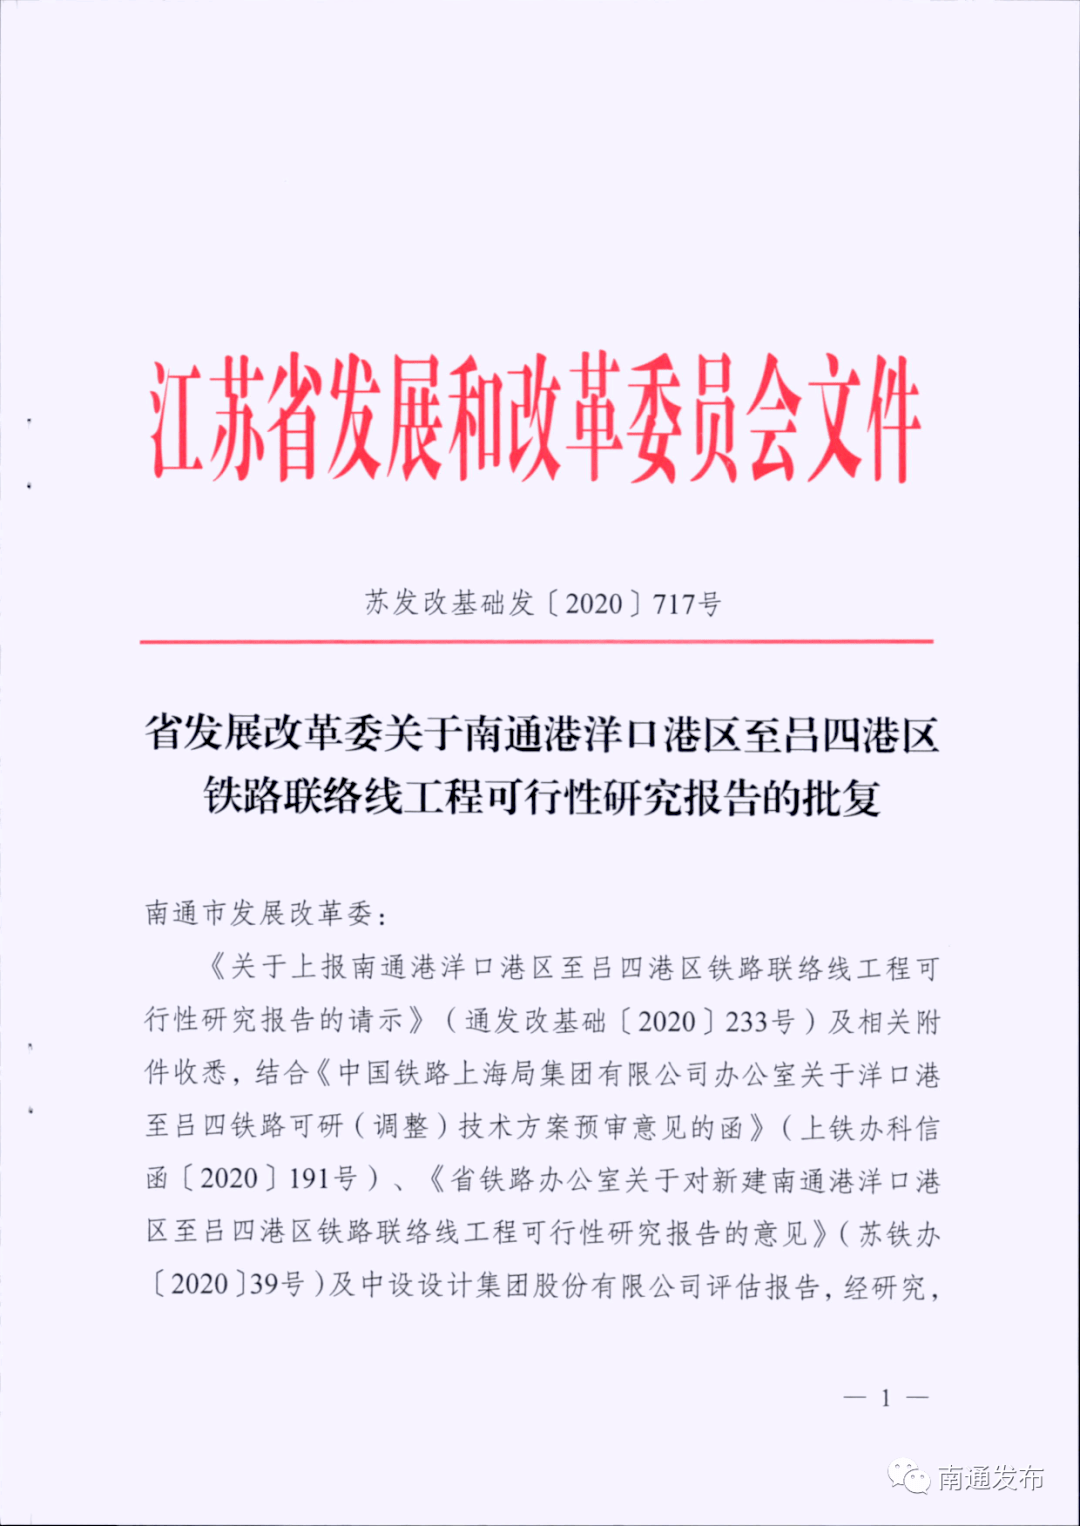 7月9日省发改委正式批复项目工可.